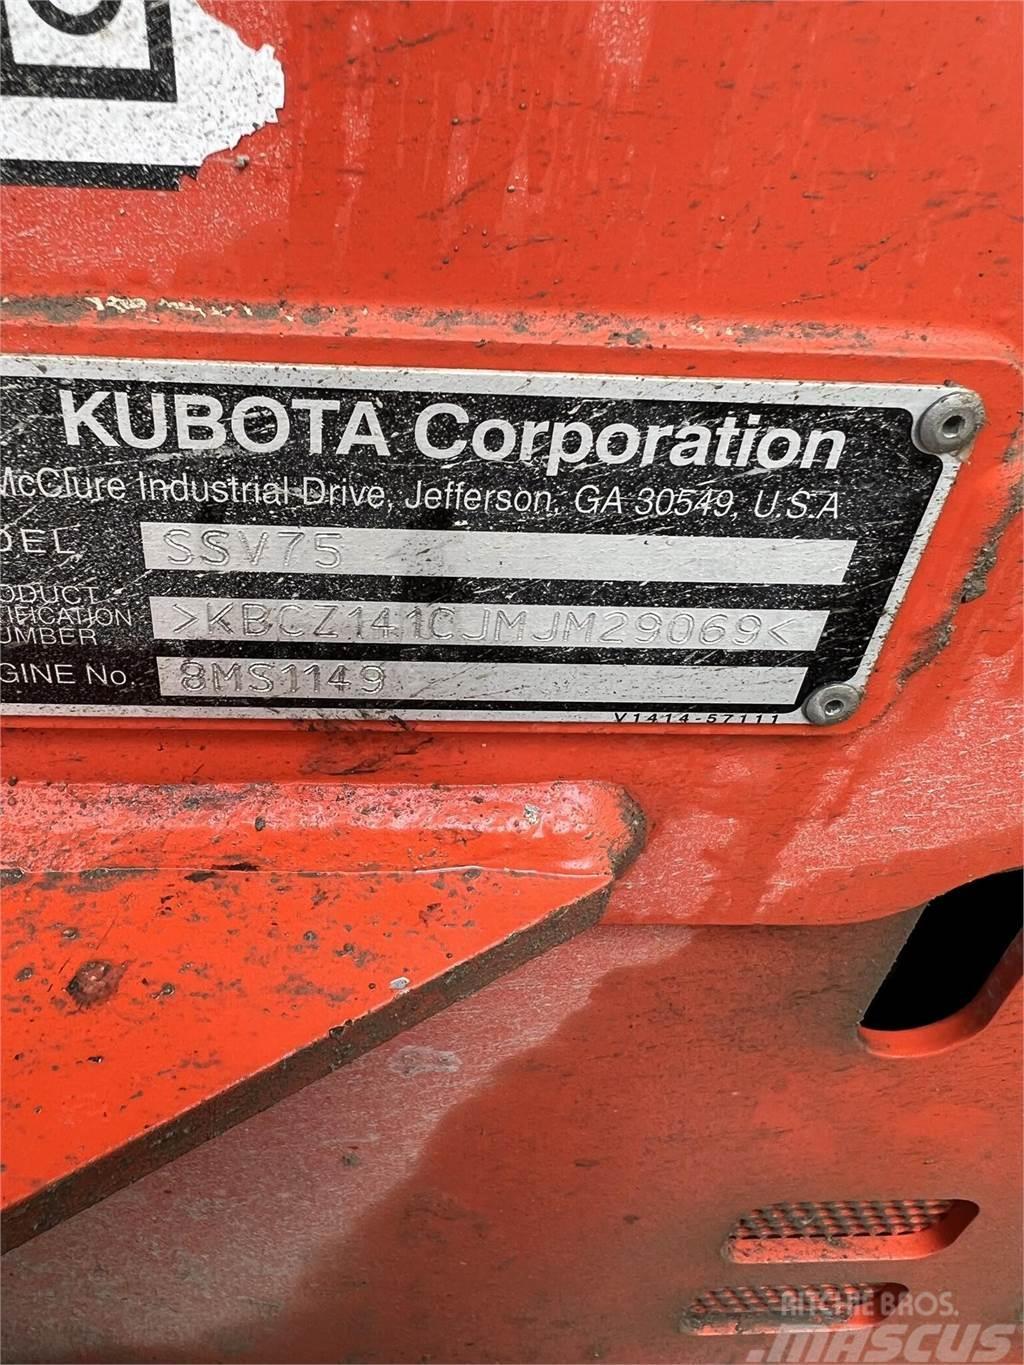 Kubota SSV75 Minilæsser - skridstyret